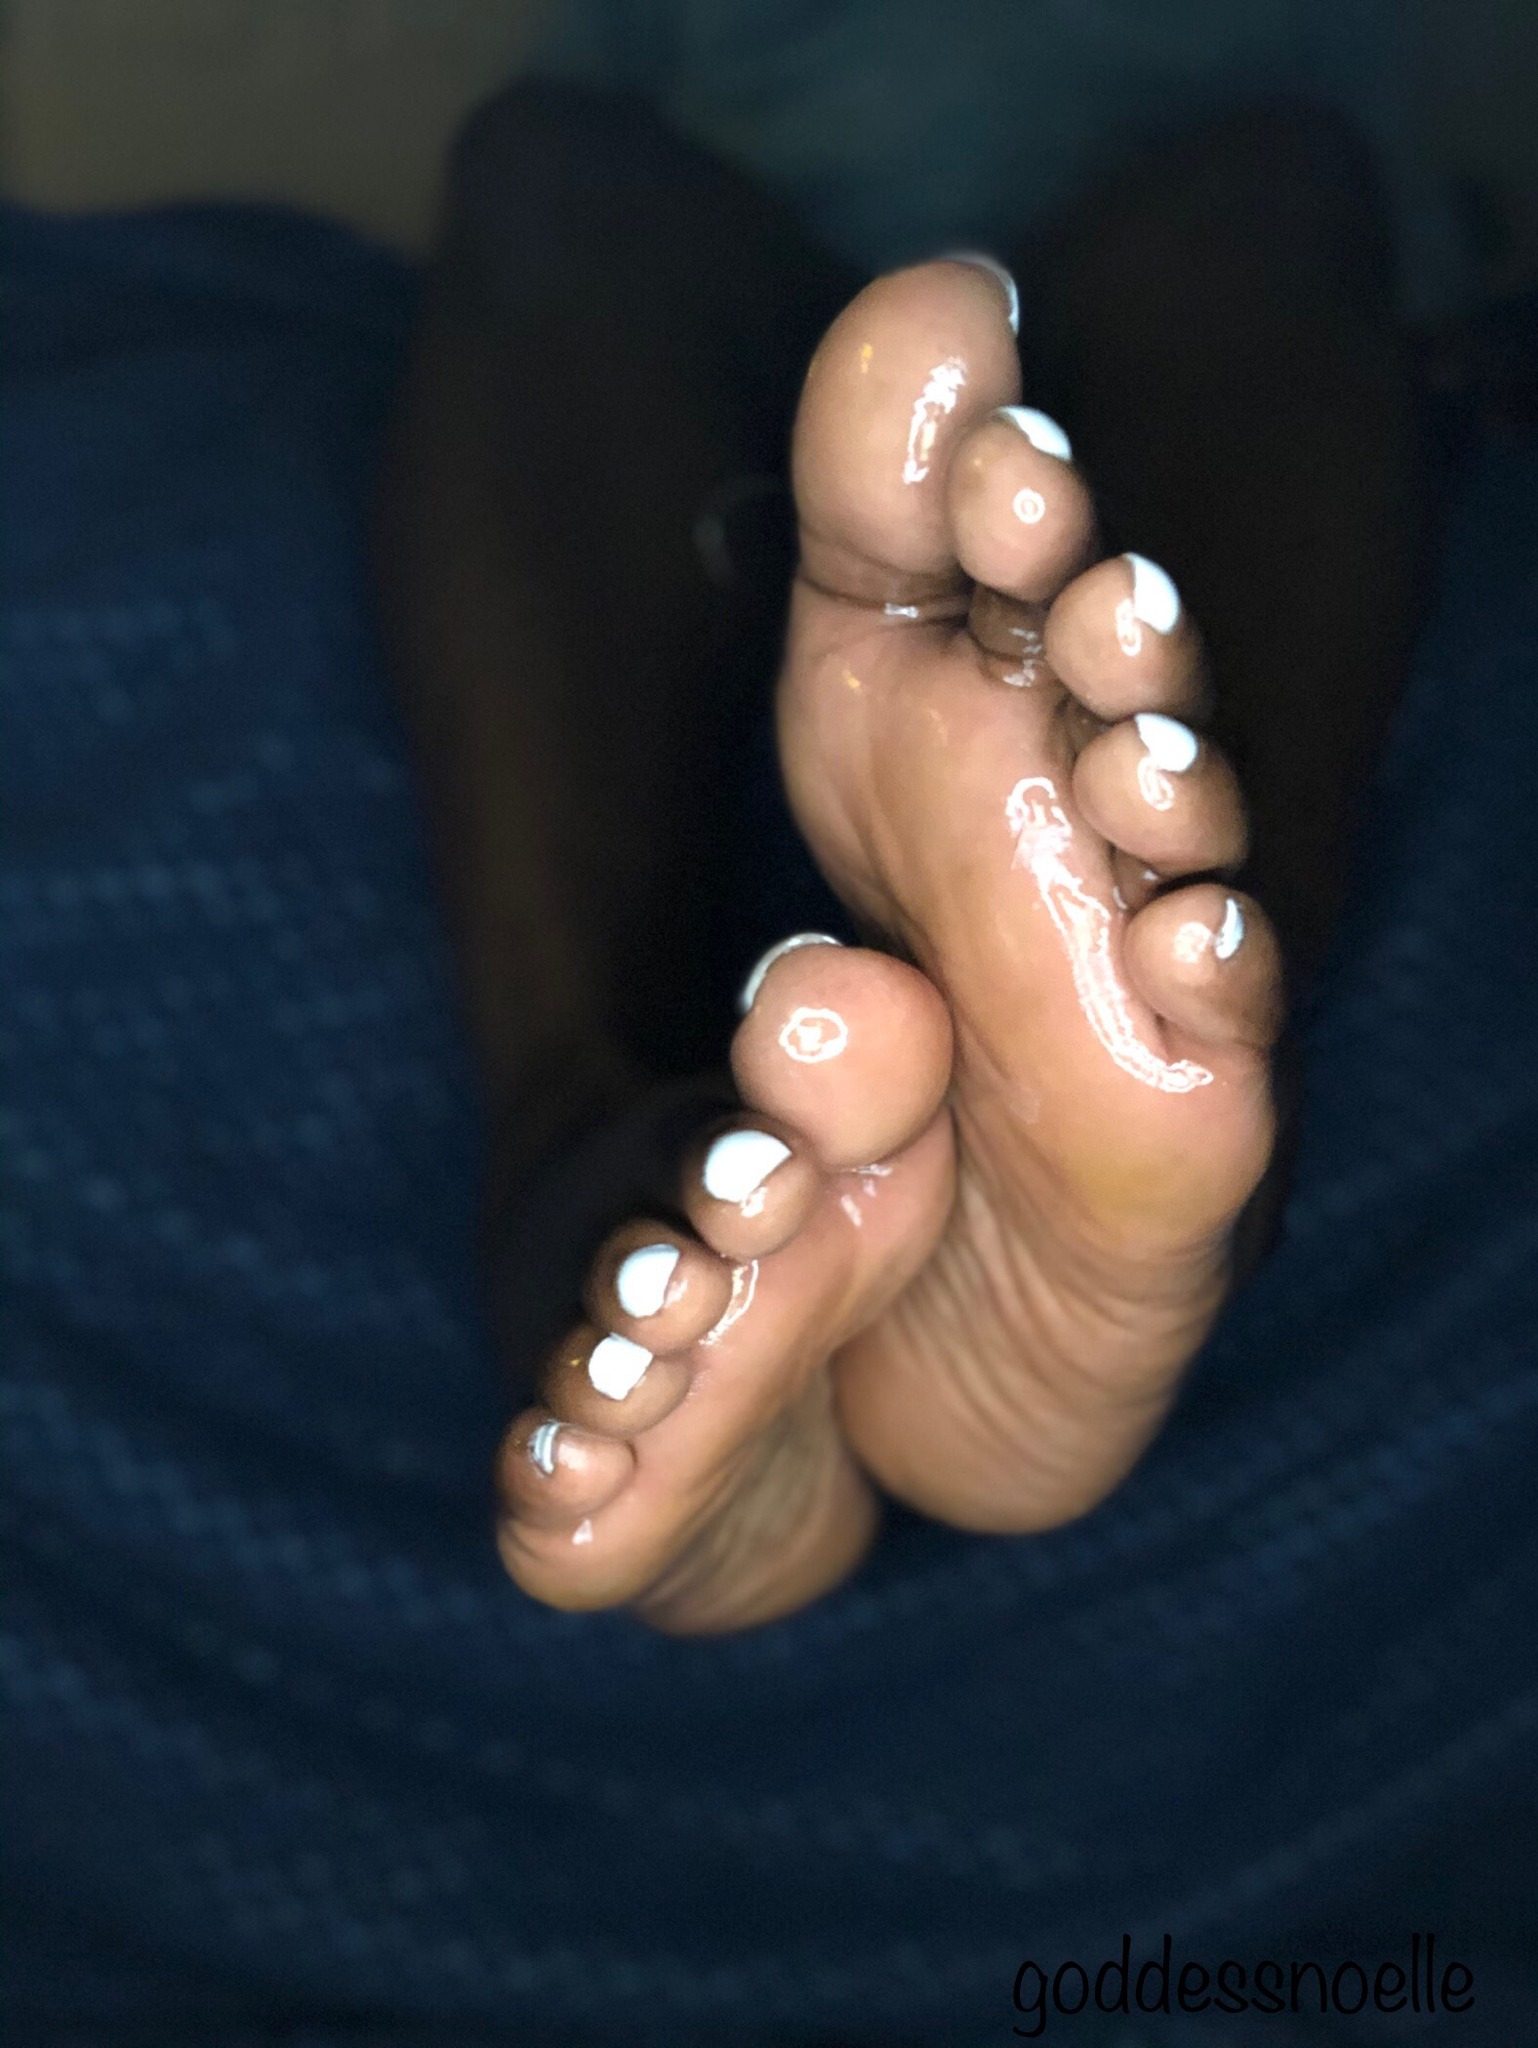 Ebony feet on face